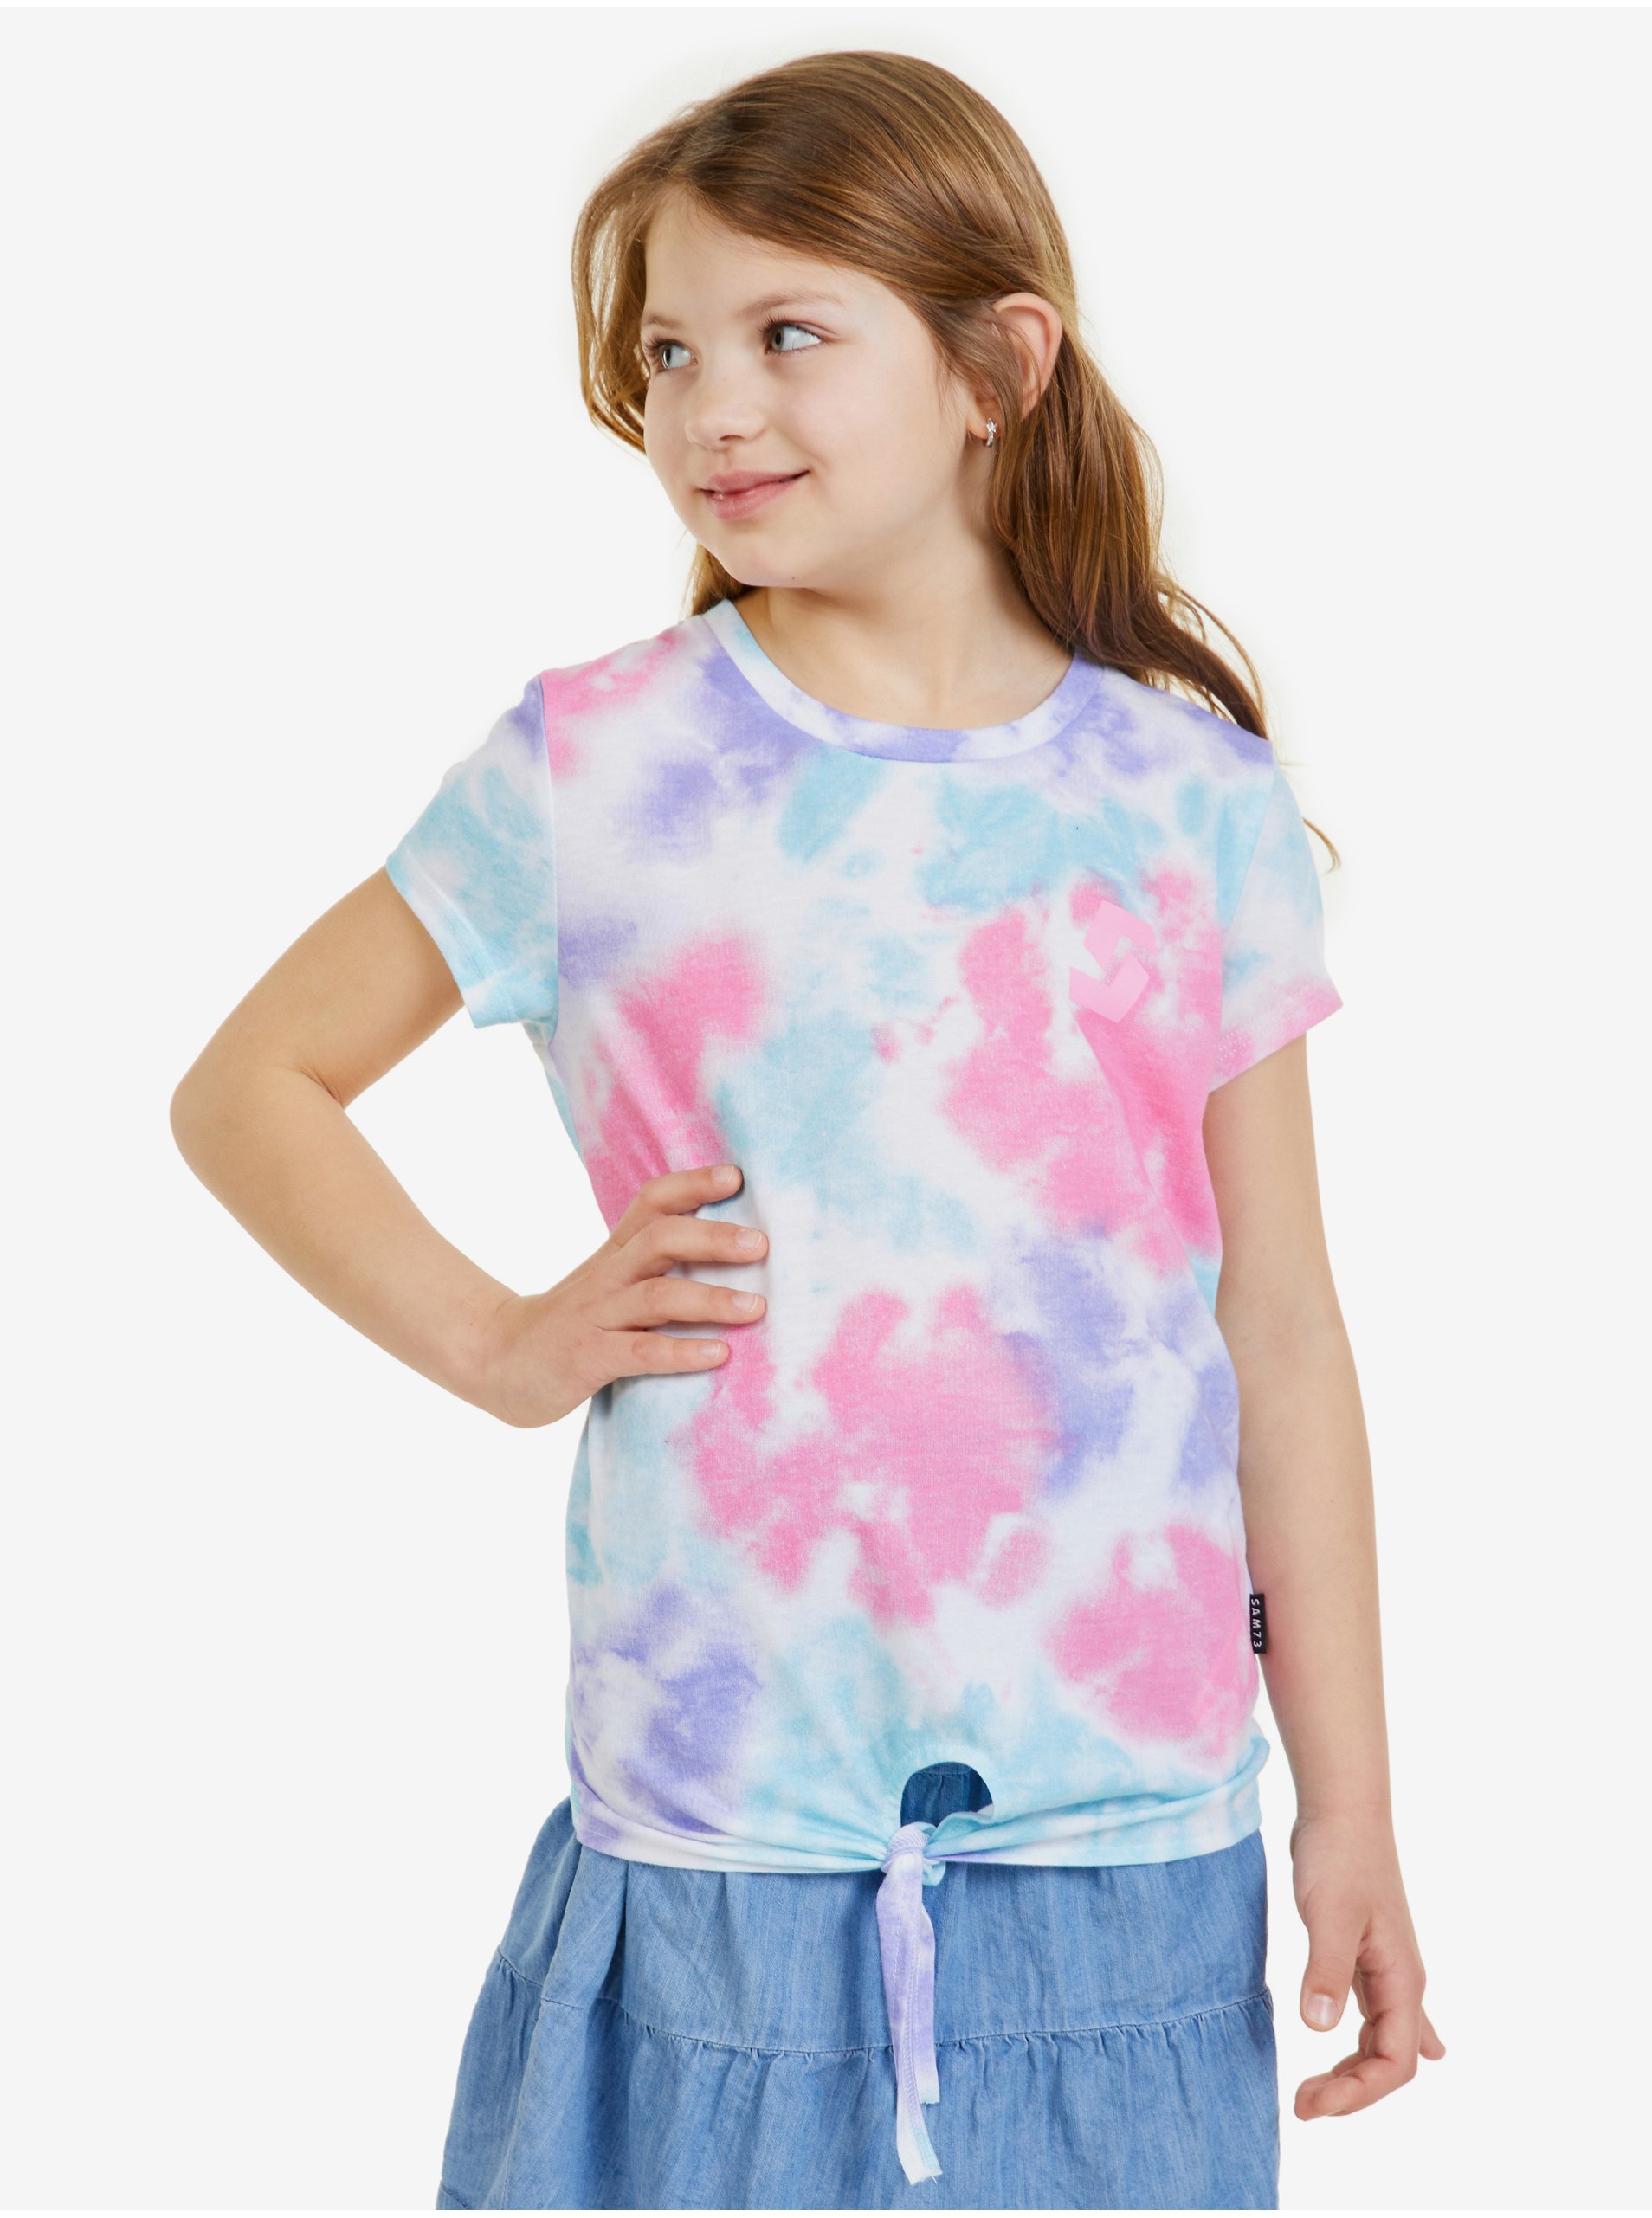 Lacno Modré dievčenské batikované tričko SAM 73 Regina